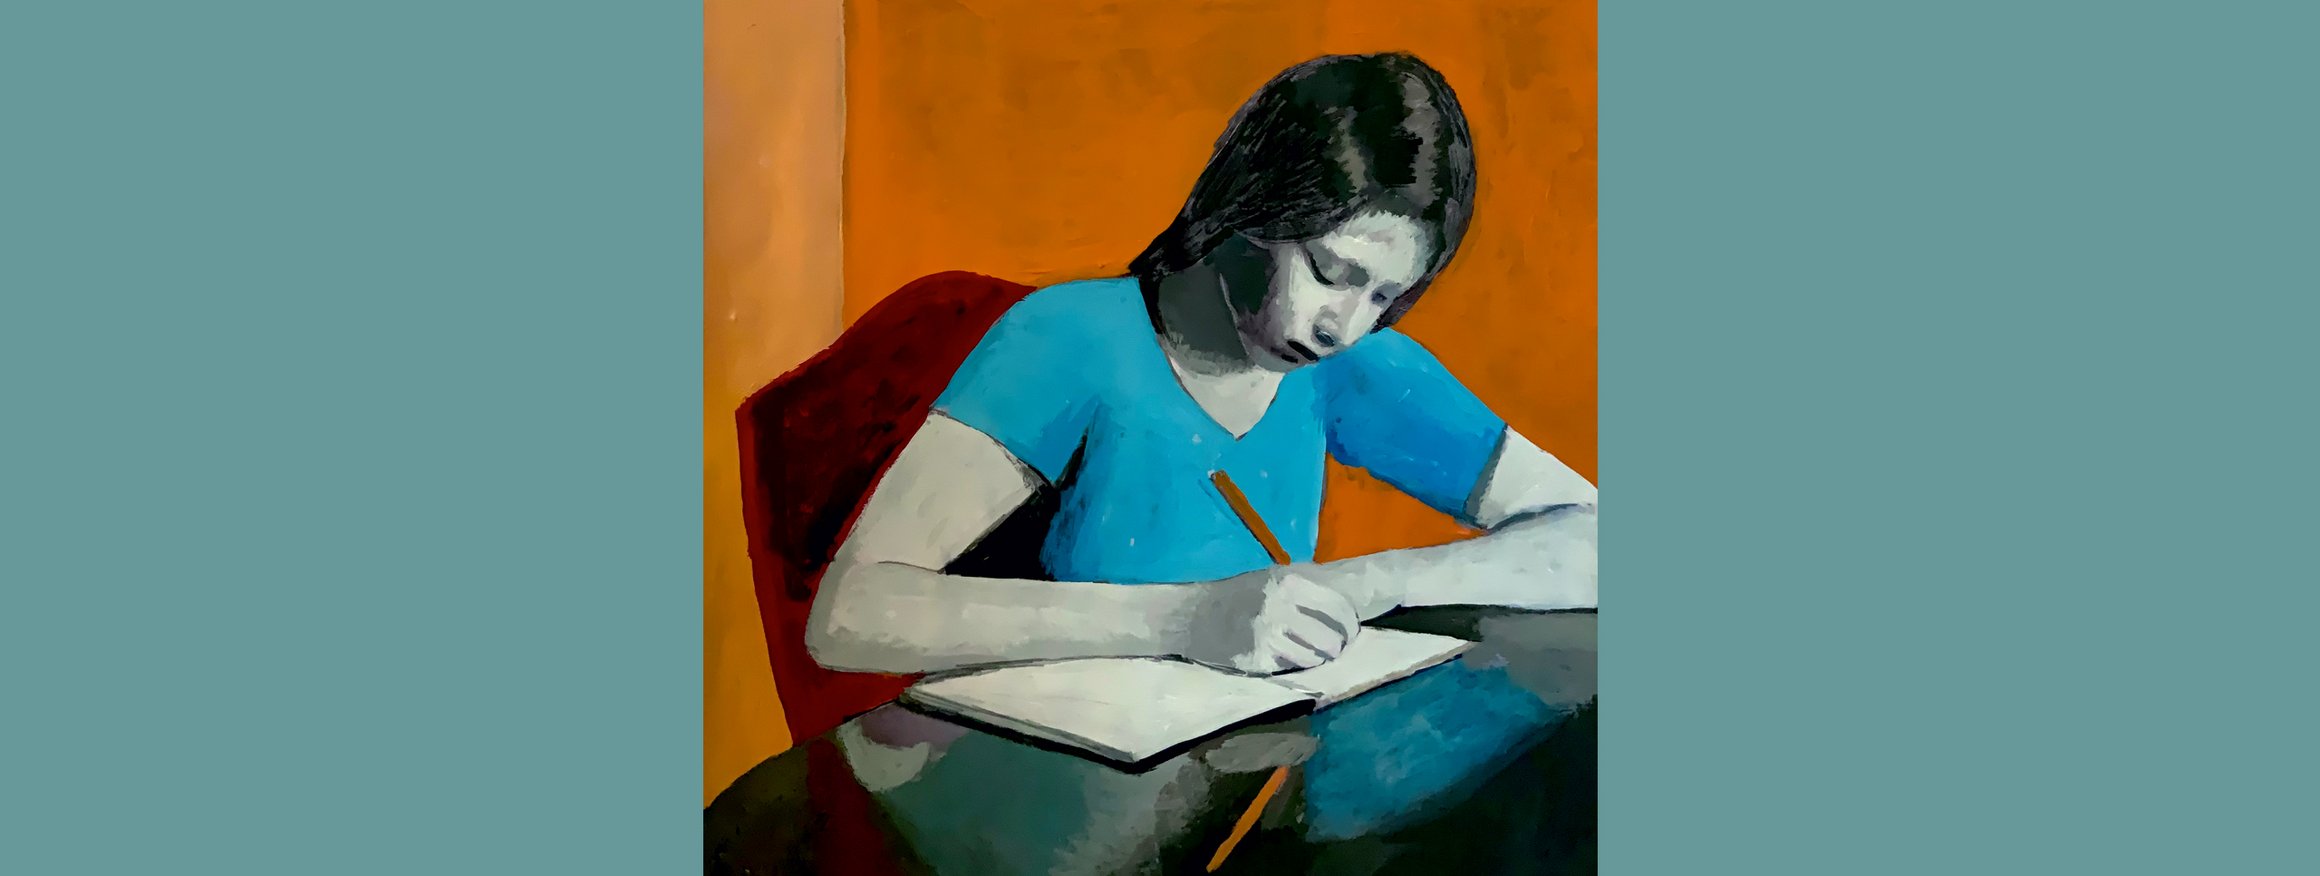 Die Illustration zeigt eine junge Frau im blauen T-Shirt, die an einem Tisch sitzt und in ein Notizbuch schreibt